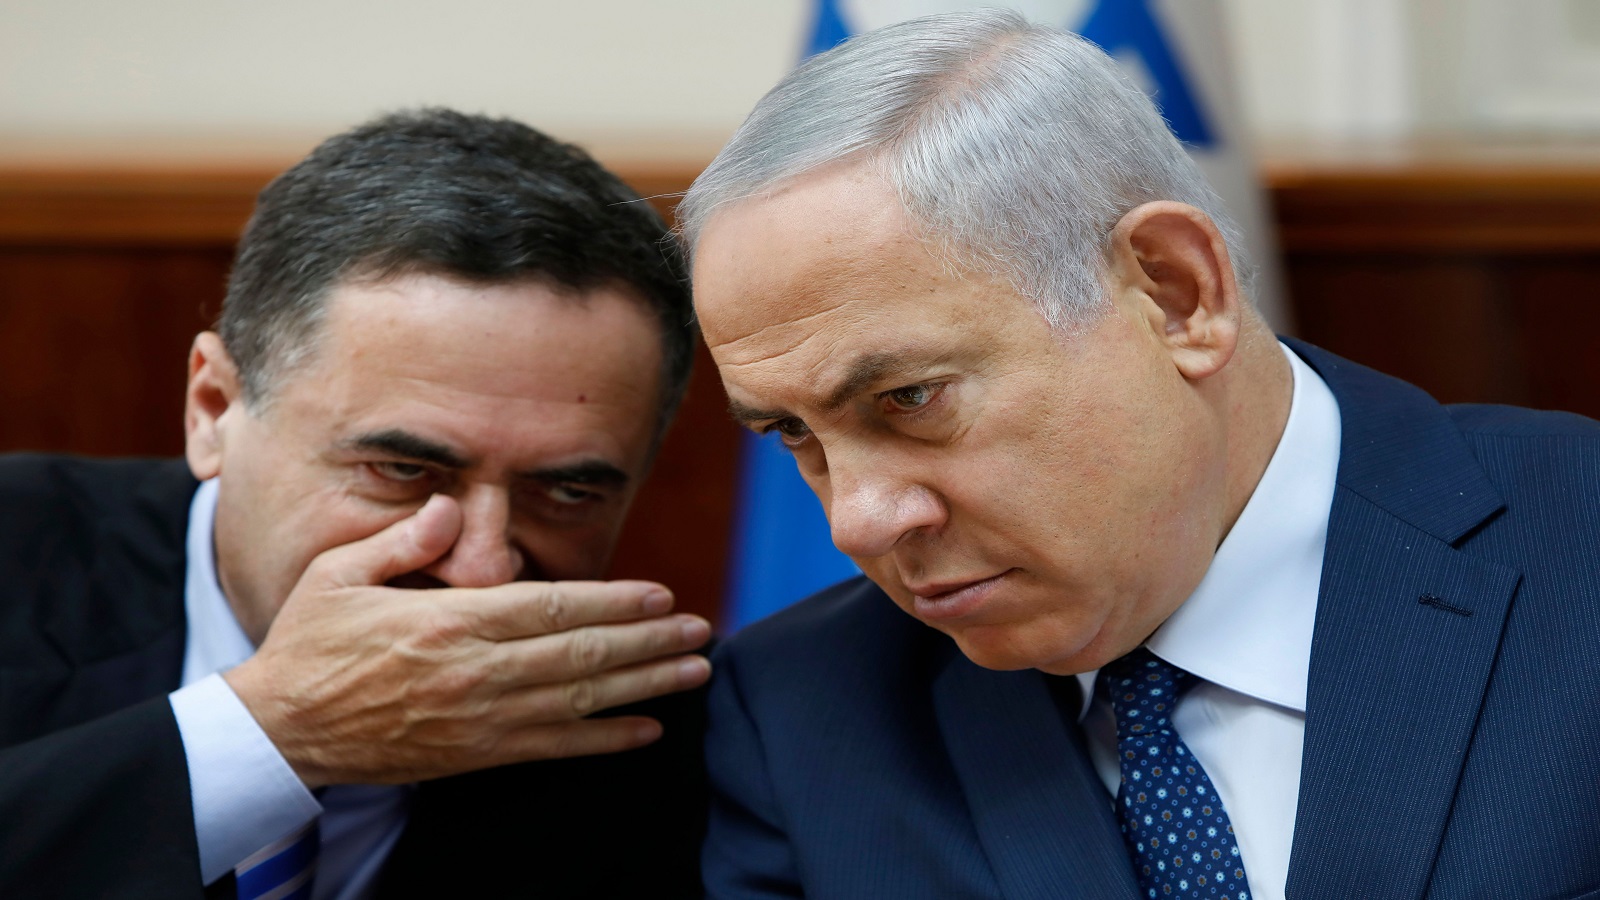 إسرائيل وإيران:تهديدات متبادلة بالحرب..لا تستبعد لبنان